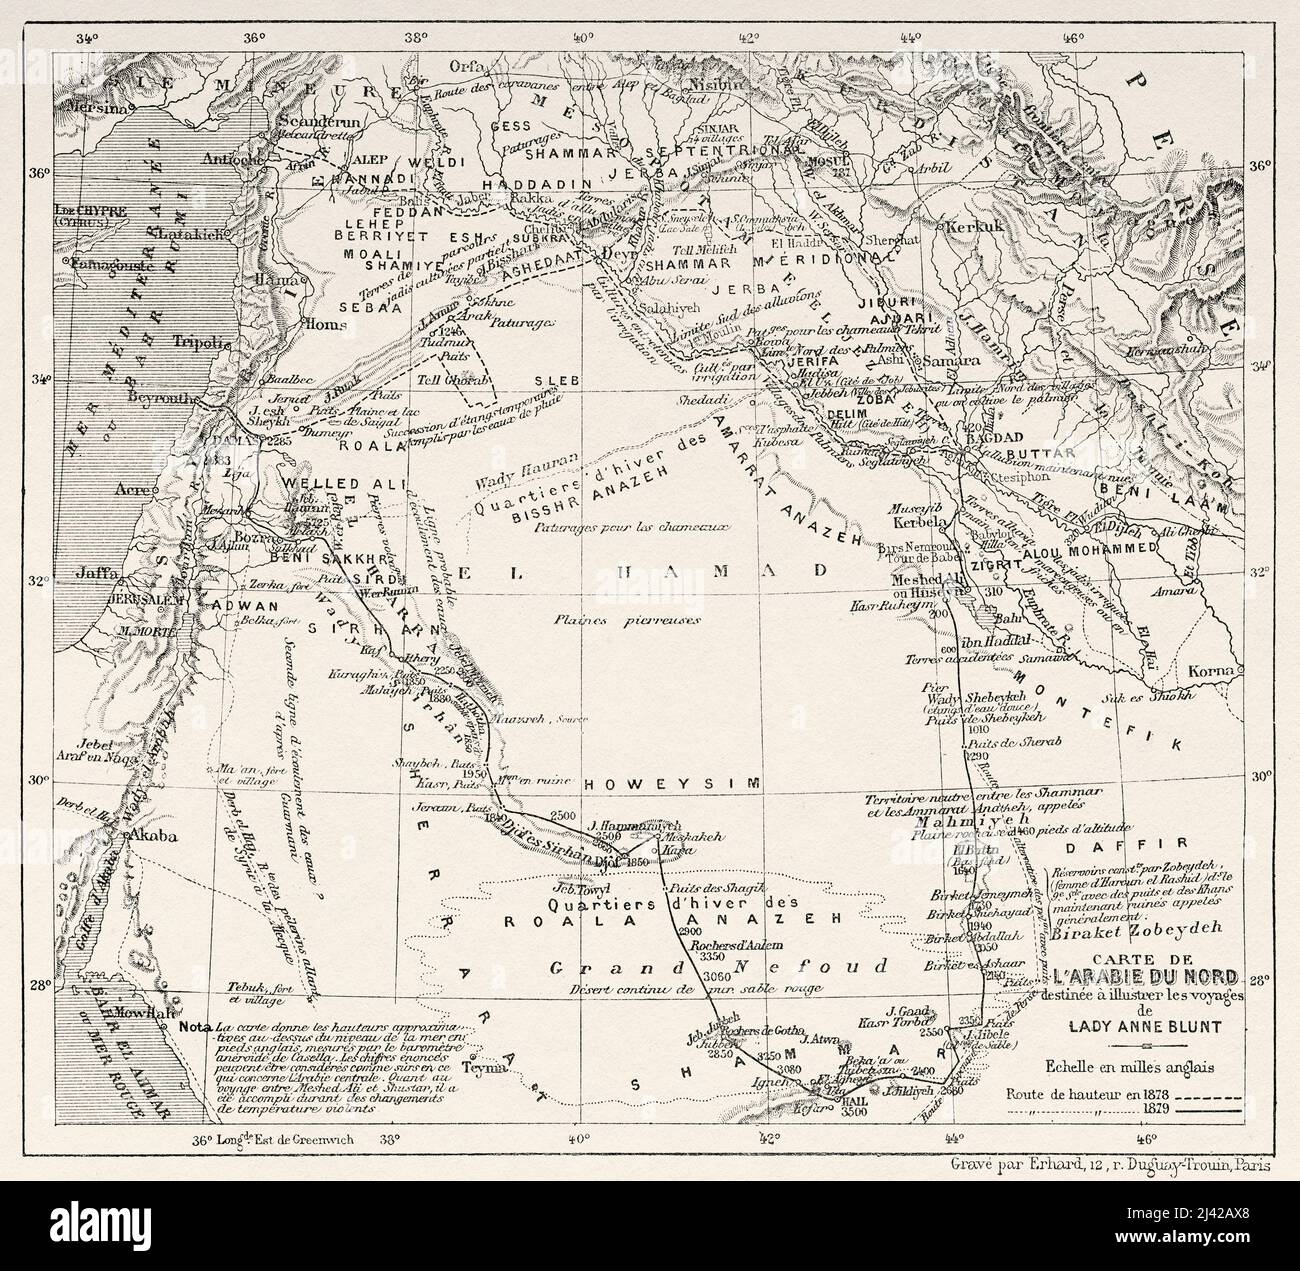 Mapa de Arabia del Norte desde peregrinación a Nedjed, cuna de la raza árabe por Lady Anna Blunt 1878-1879, Le Tour du Monde 1882 Foto de stock